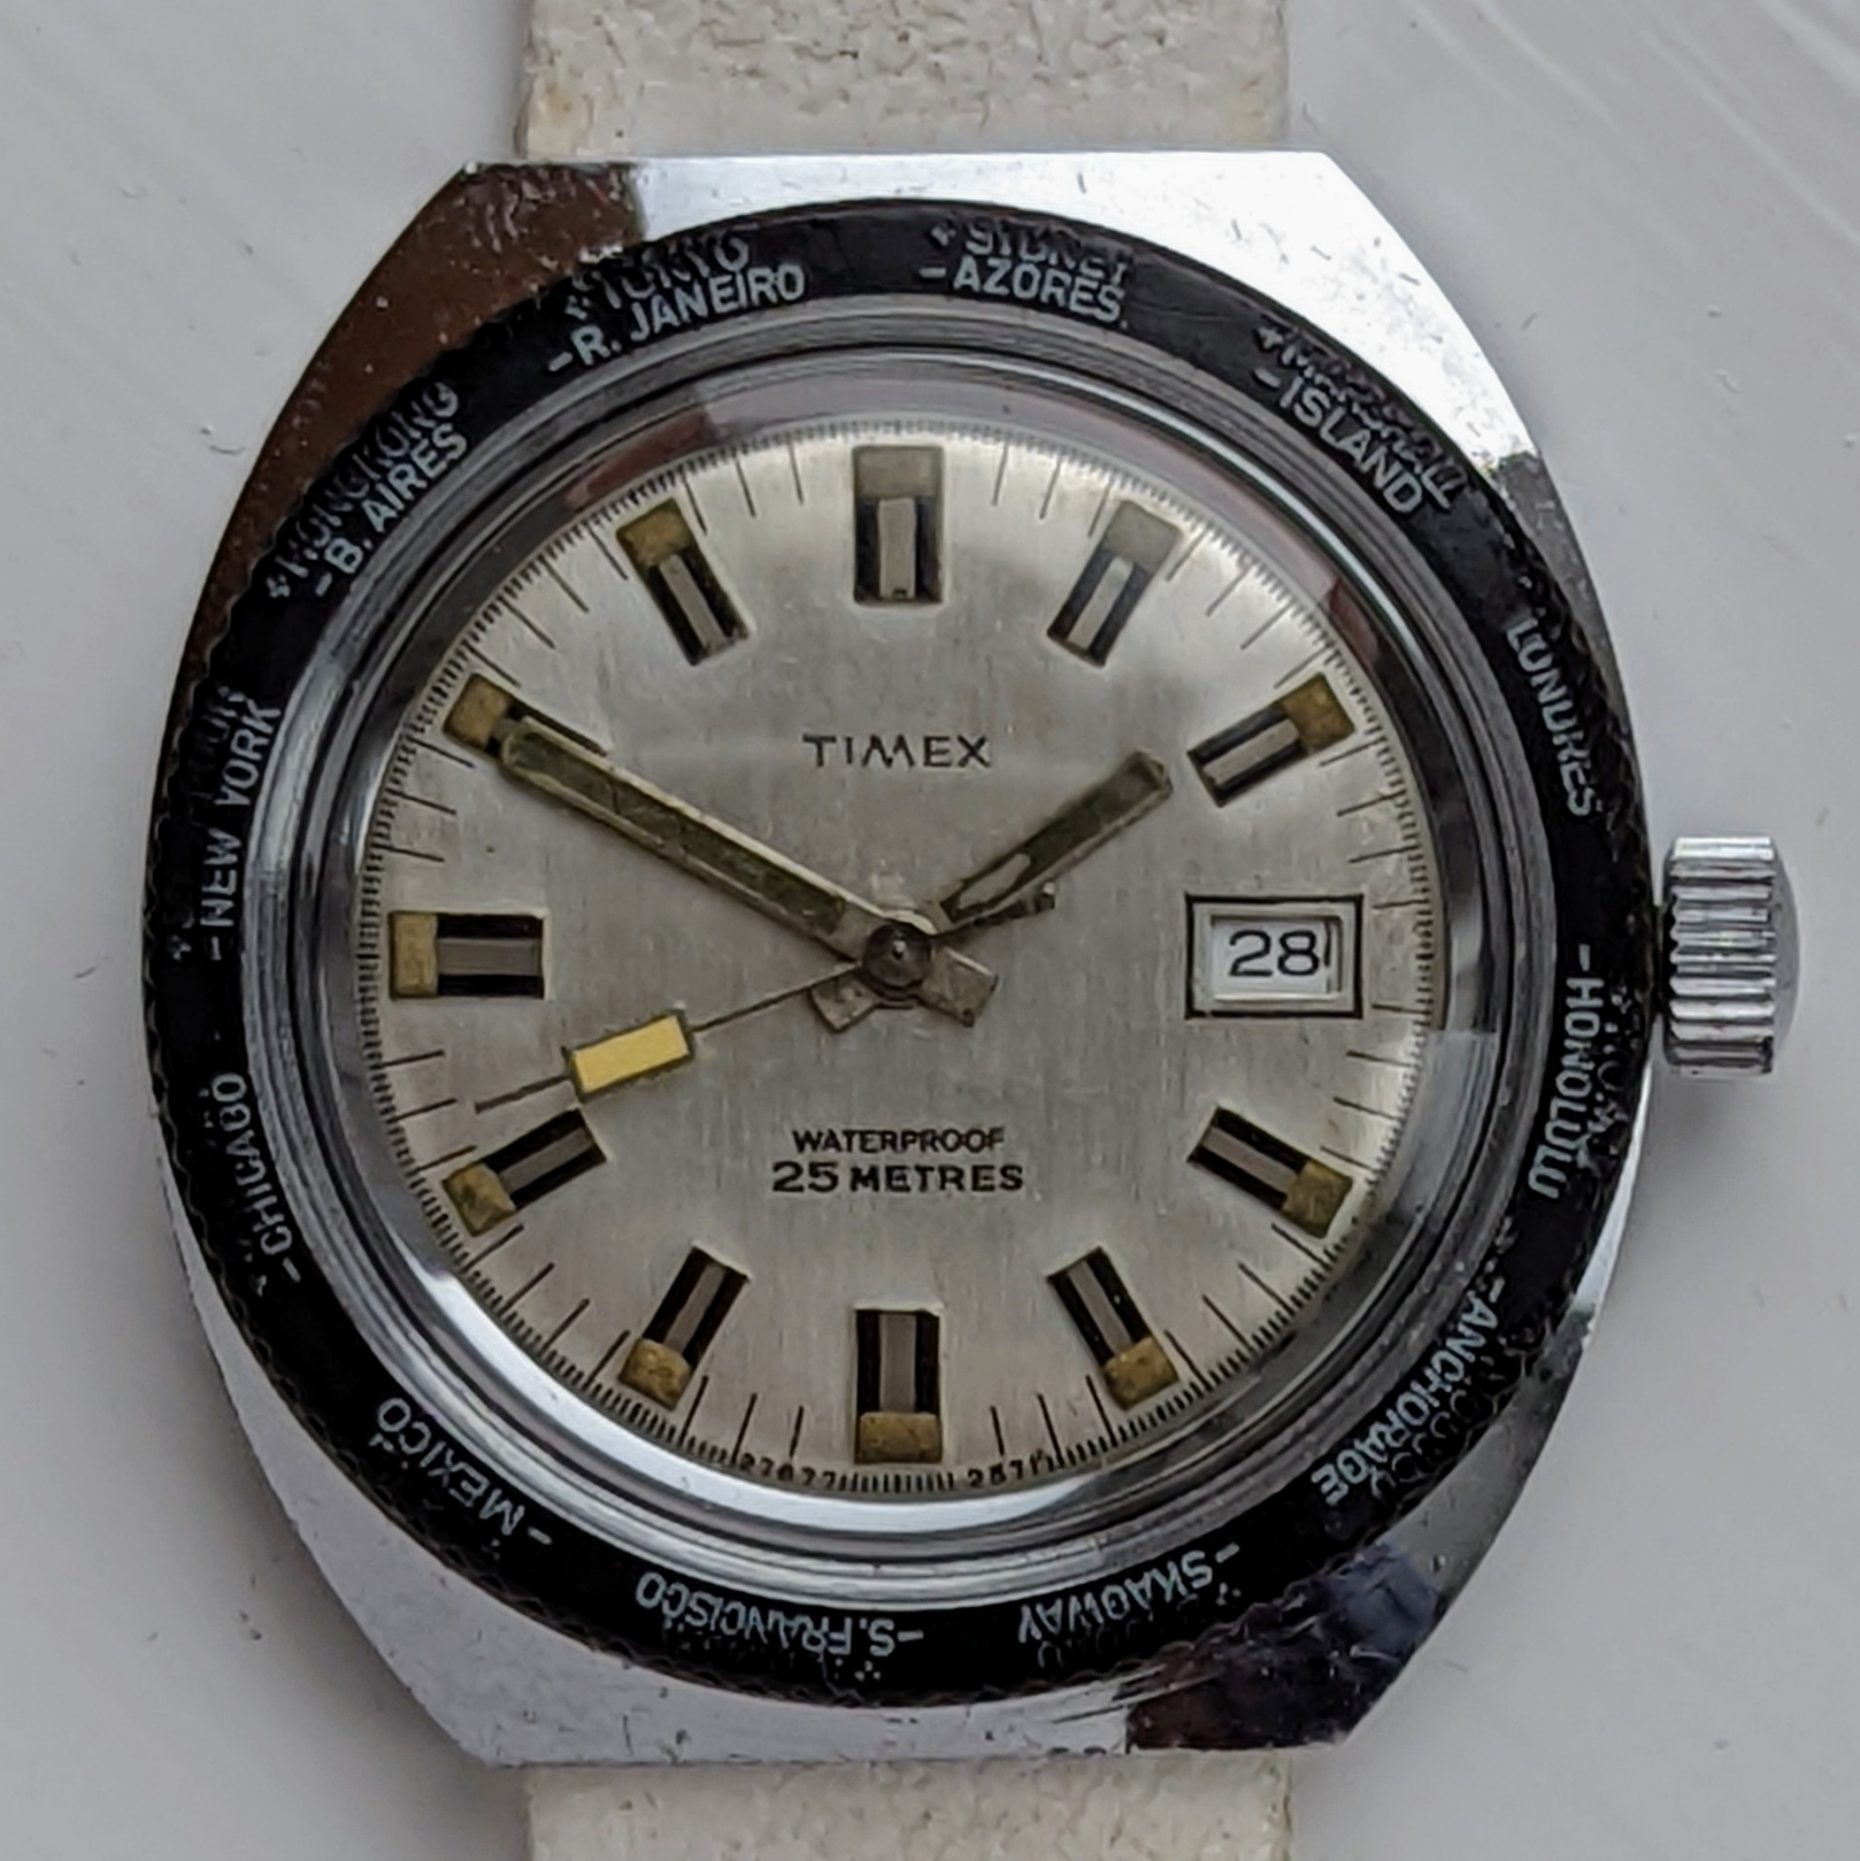 Timex Marlin 27677 2571 [1971]